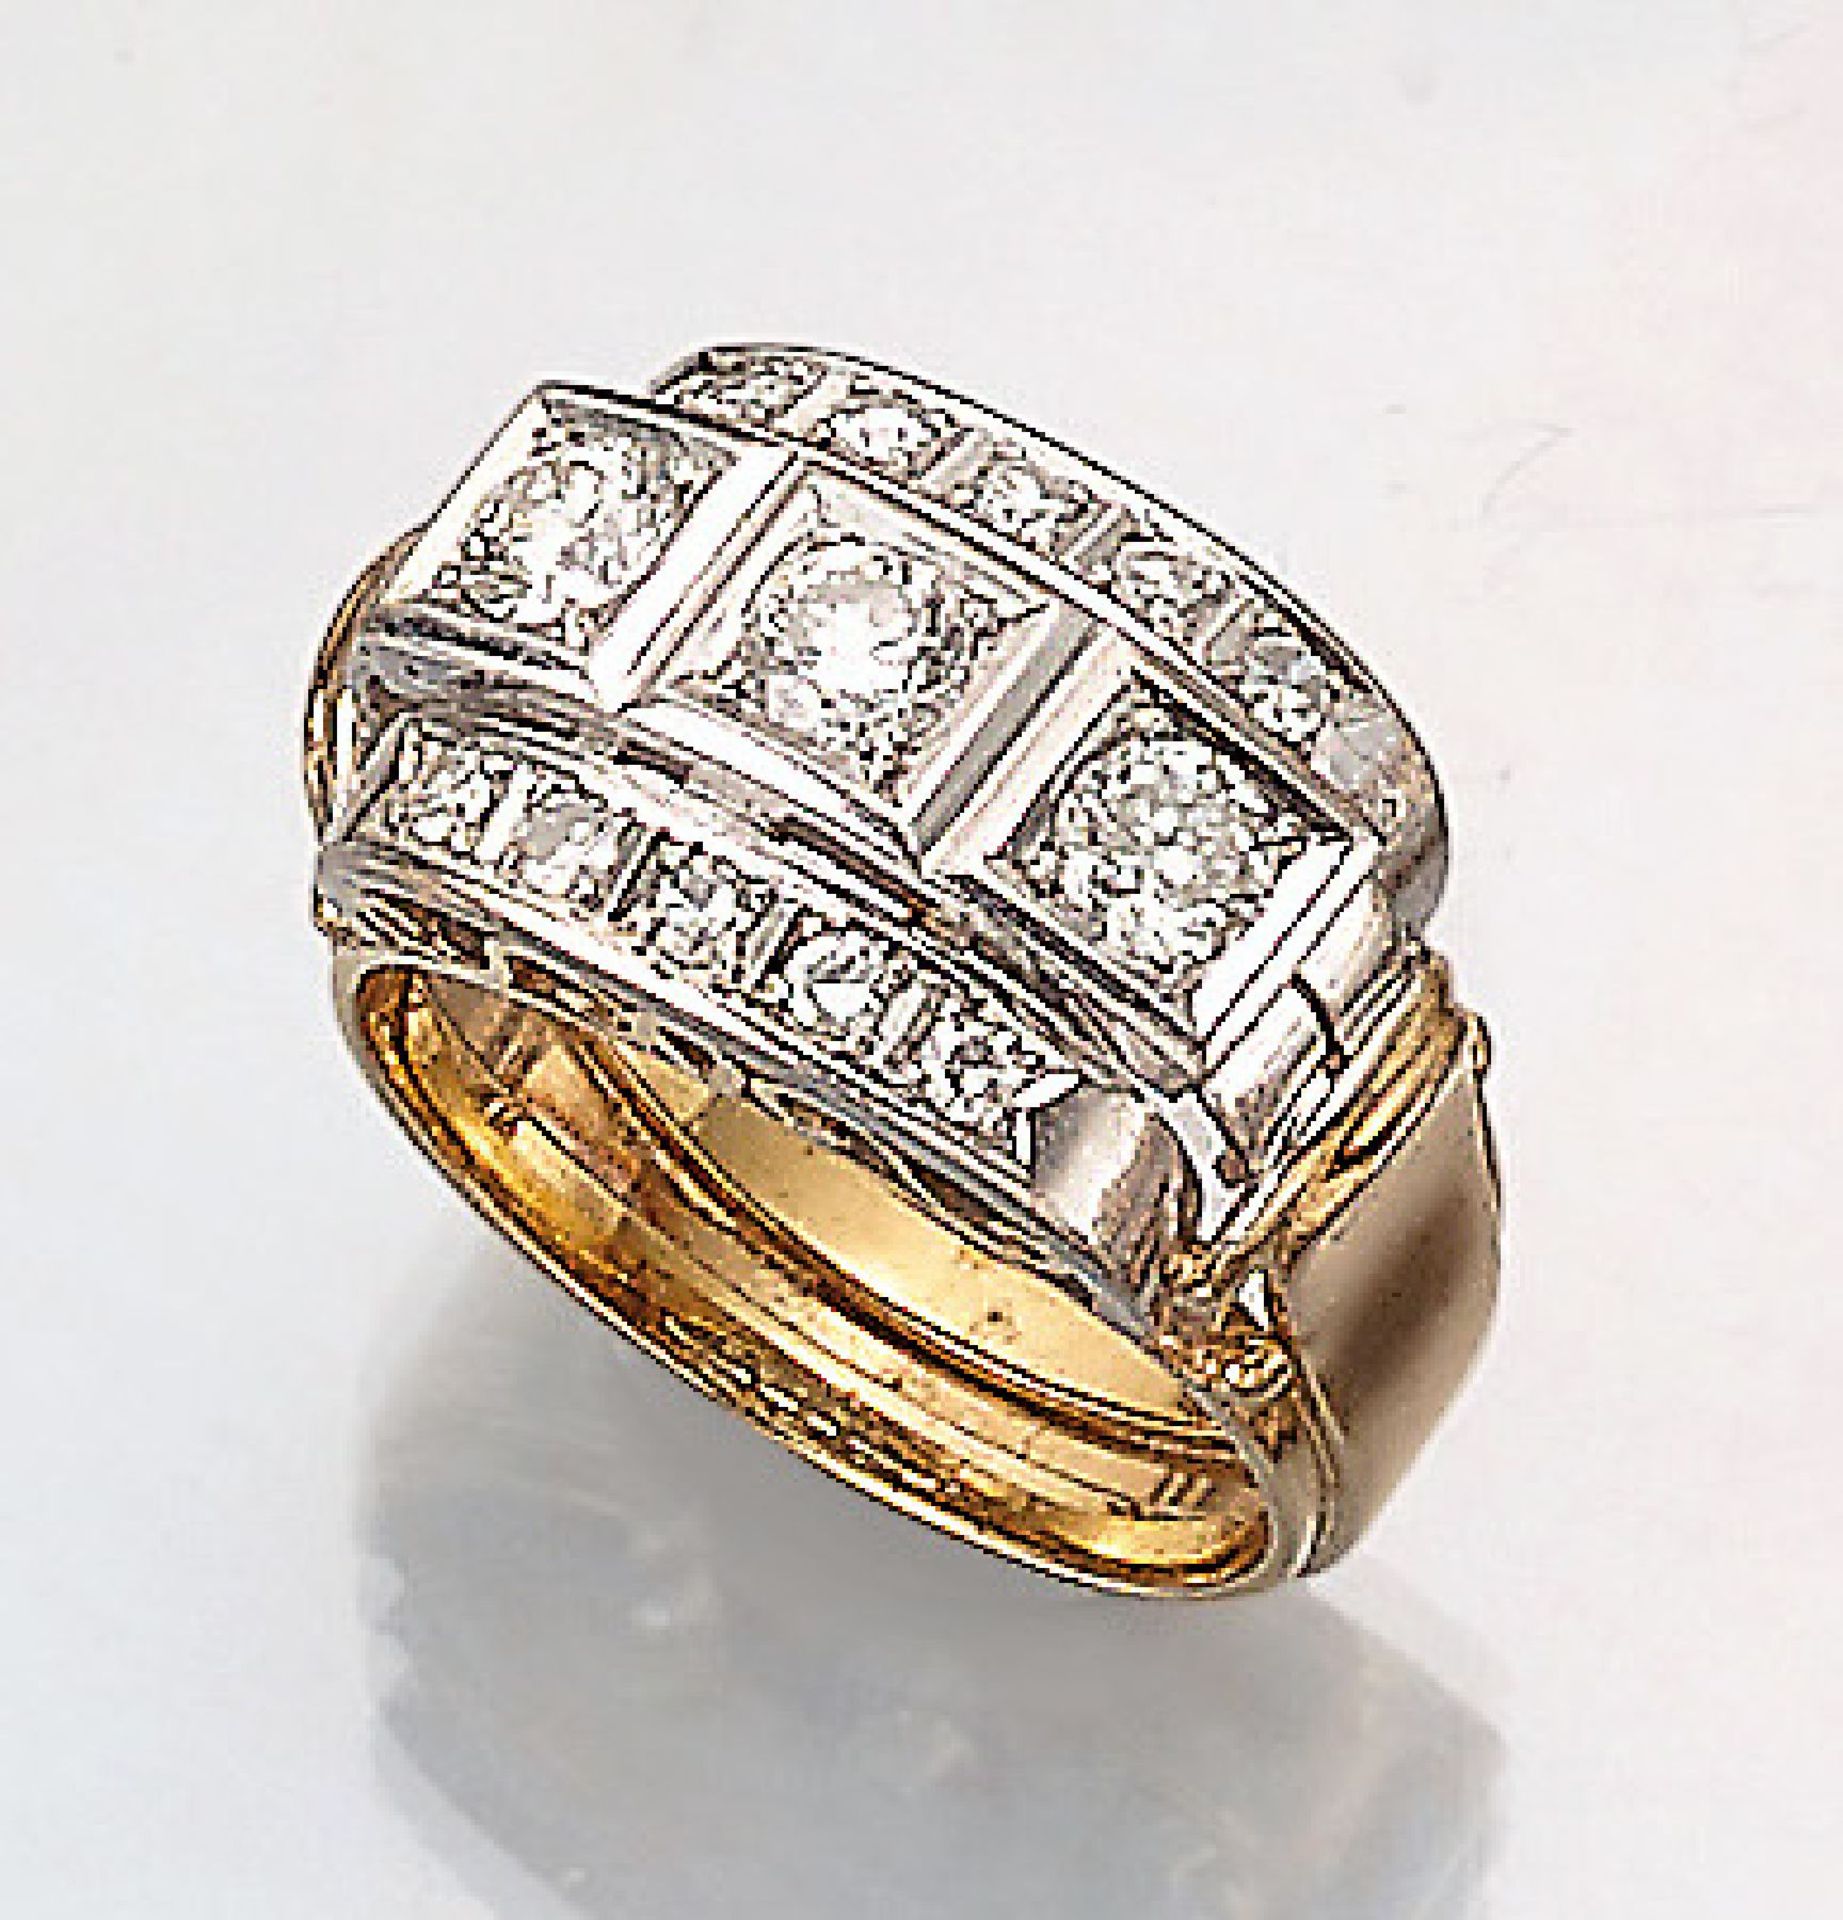 14 kt Gold Ring mit Diamanten, 1950er Jahre, GG/WG 585/000, 3 Brillanten zus. ca. 0.70 ct Weiß/si,